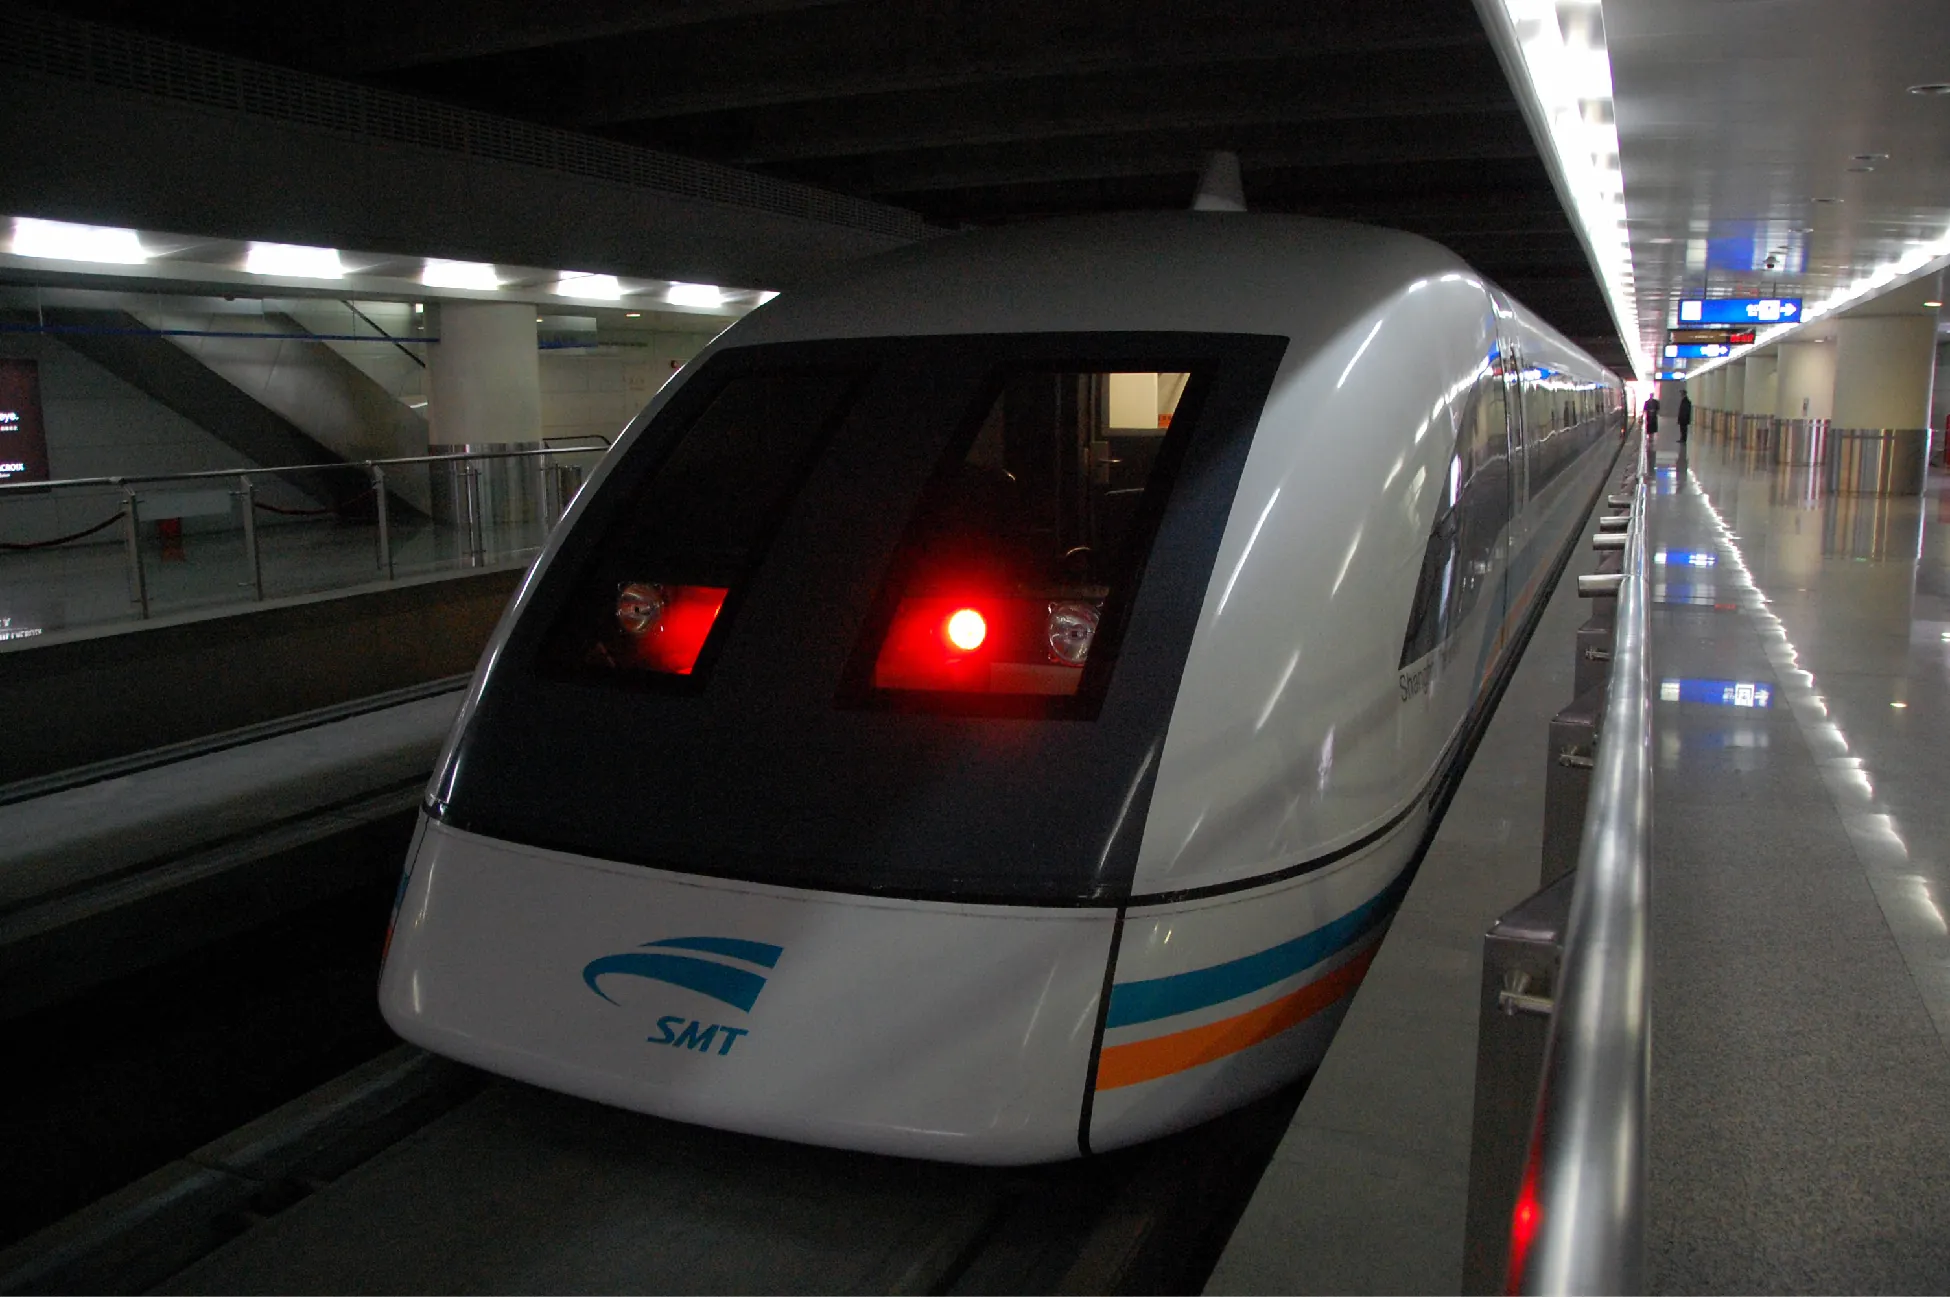 Vista frontal de un vagón de metro, el tren de levitación magnética.